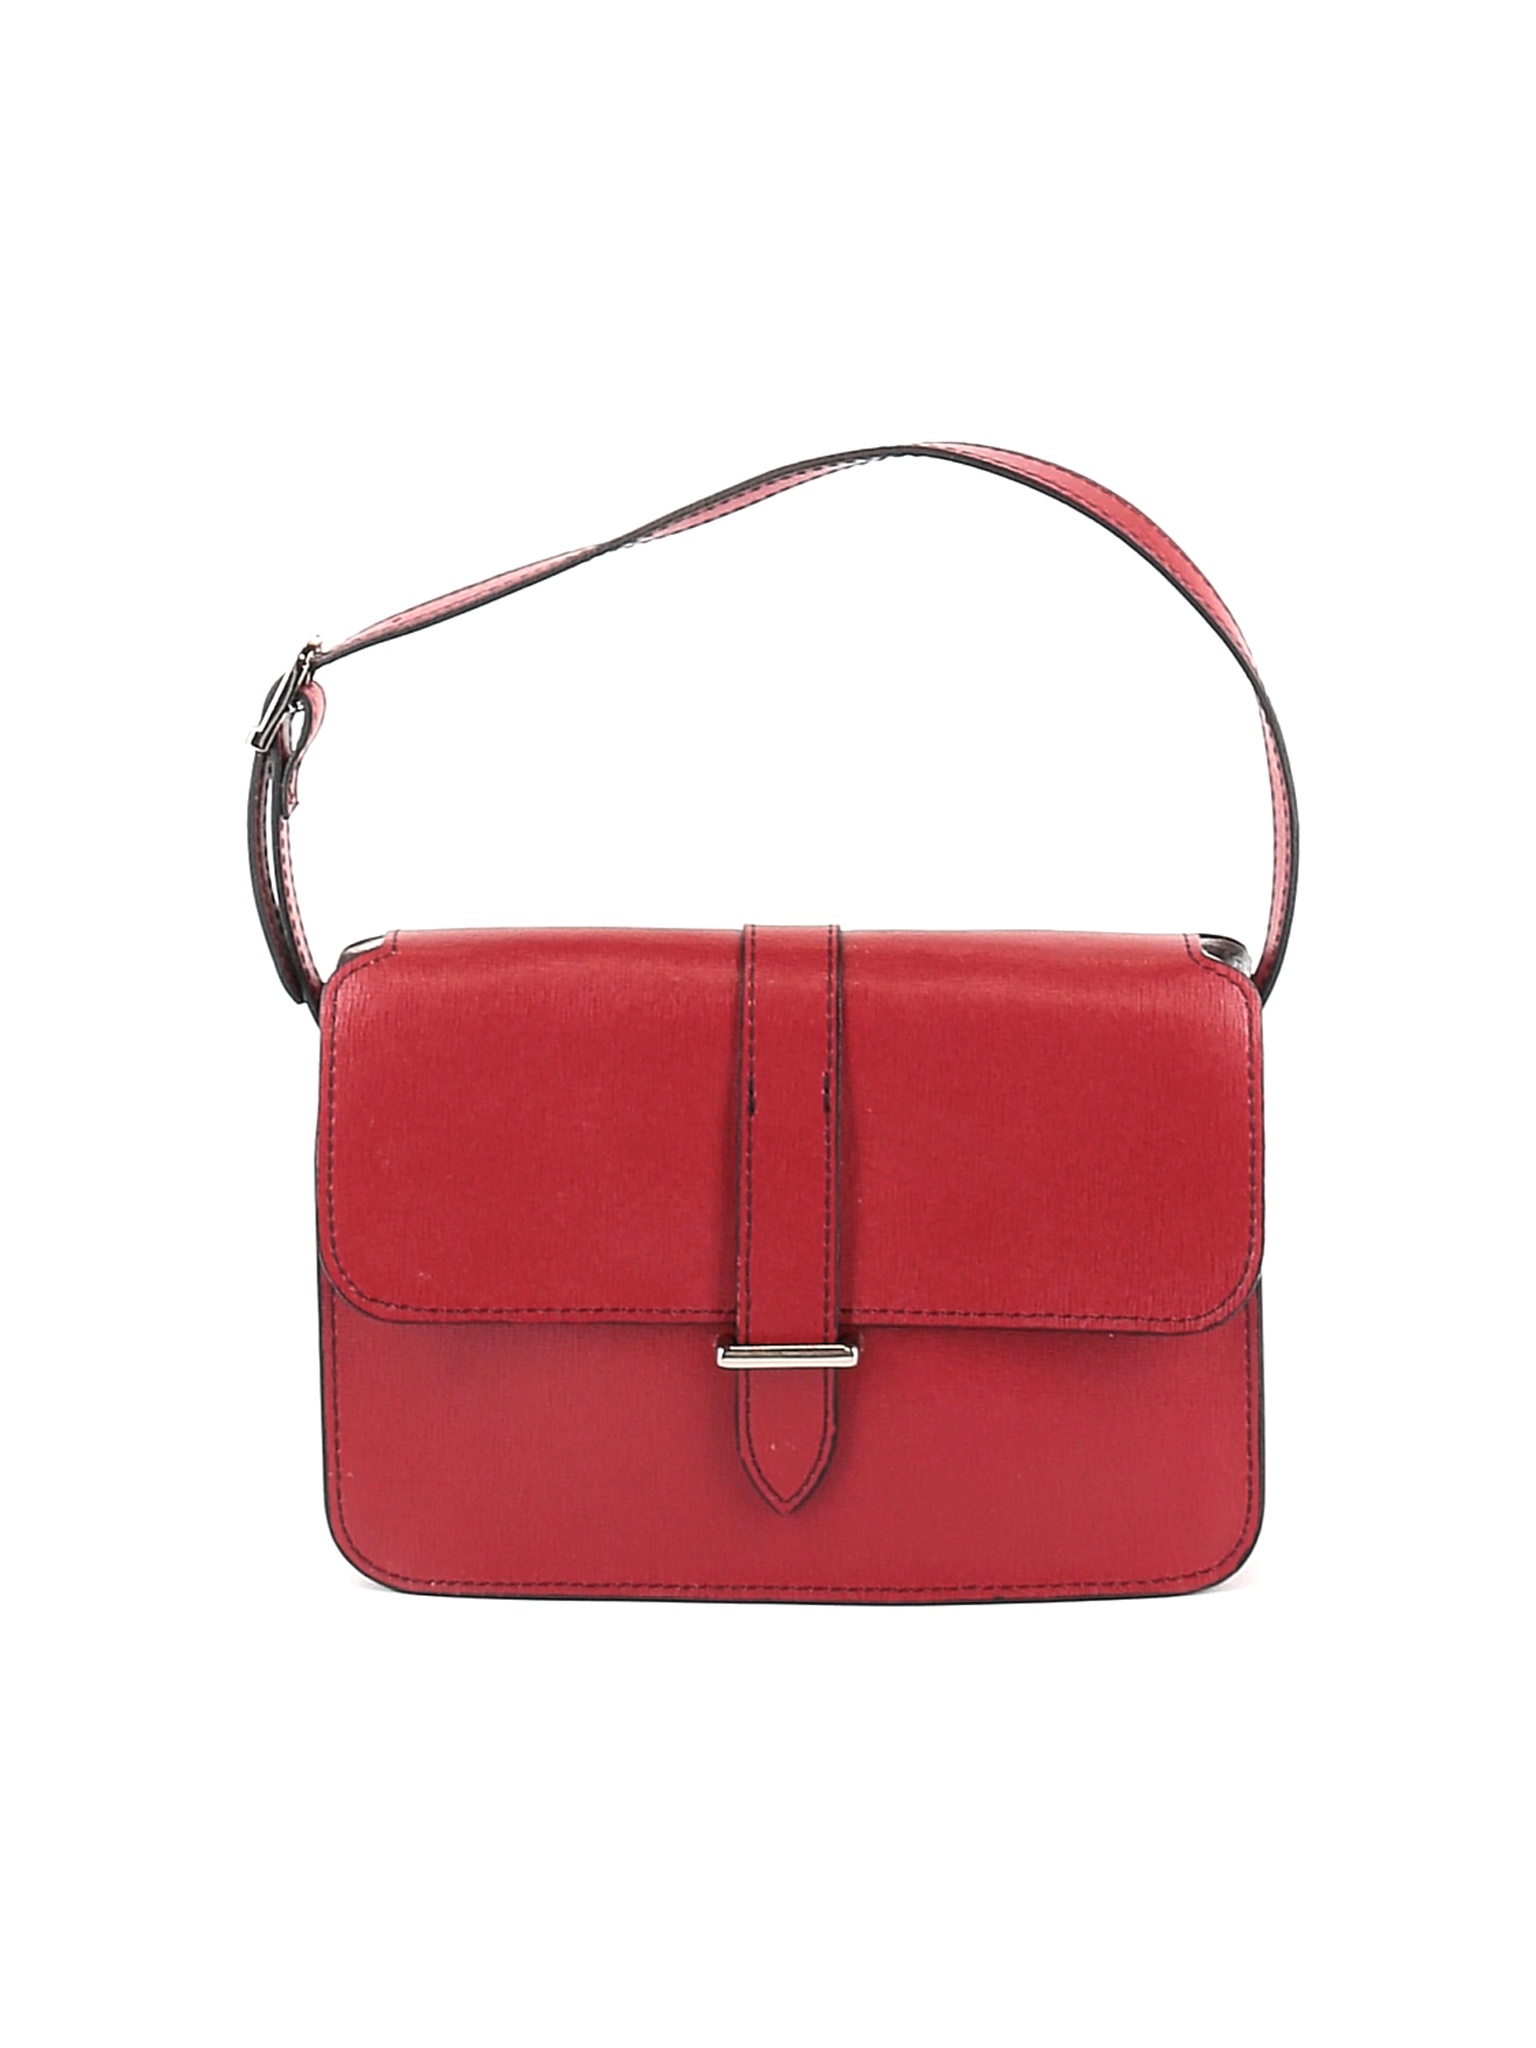 Jack Georges Women Red Leather Shoulder Bag One Size | eBay